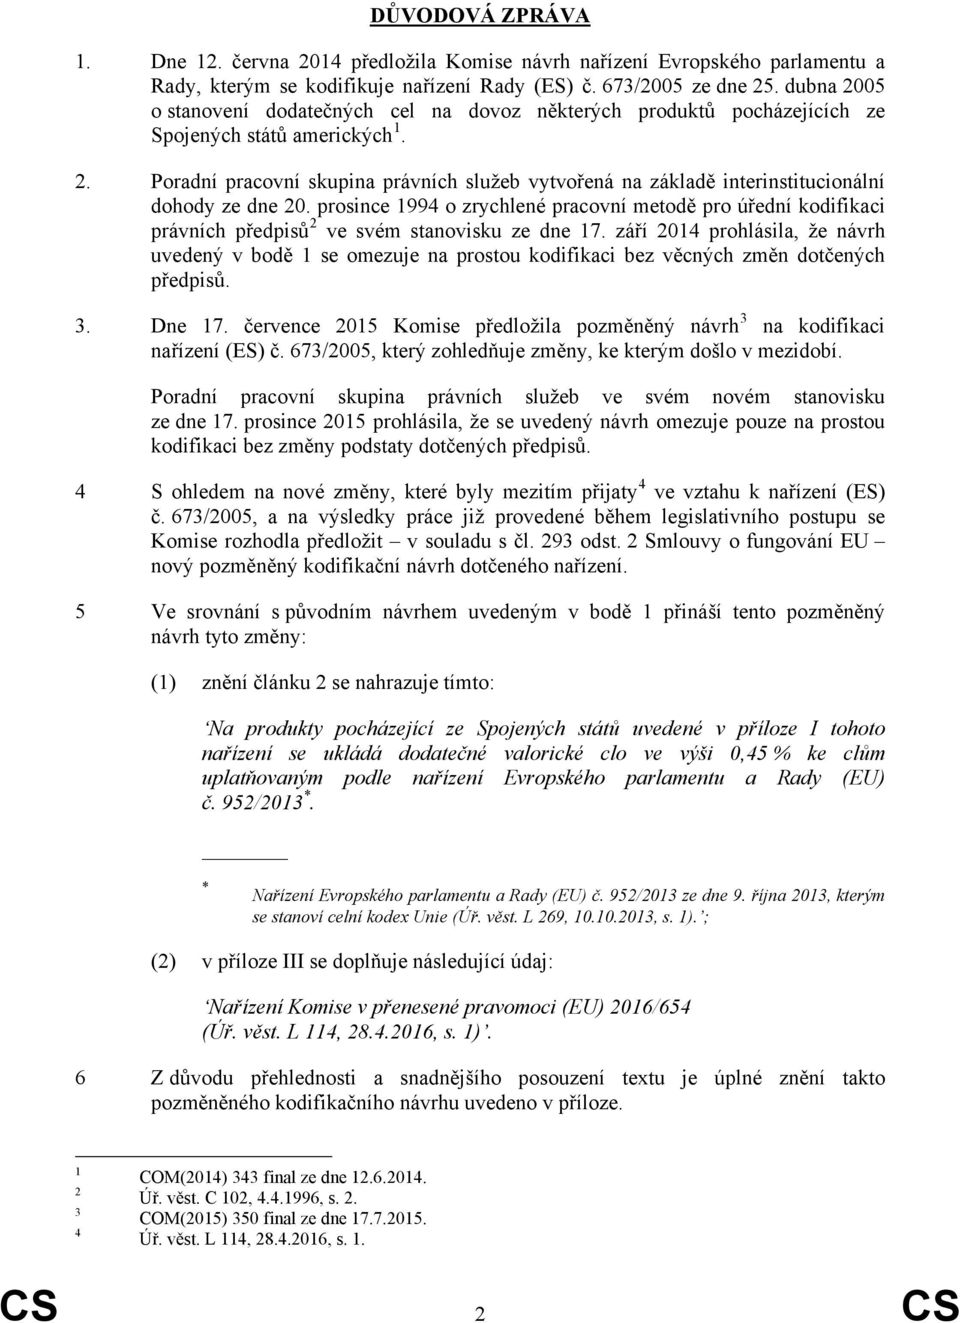 prosince 1994 o zrychlené pracovní metodě pro úřední kodifikaci právních předpisů 2 ve svém stanovisku ze dne 17.